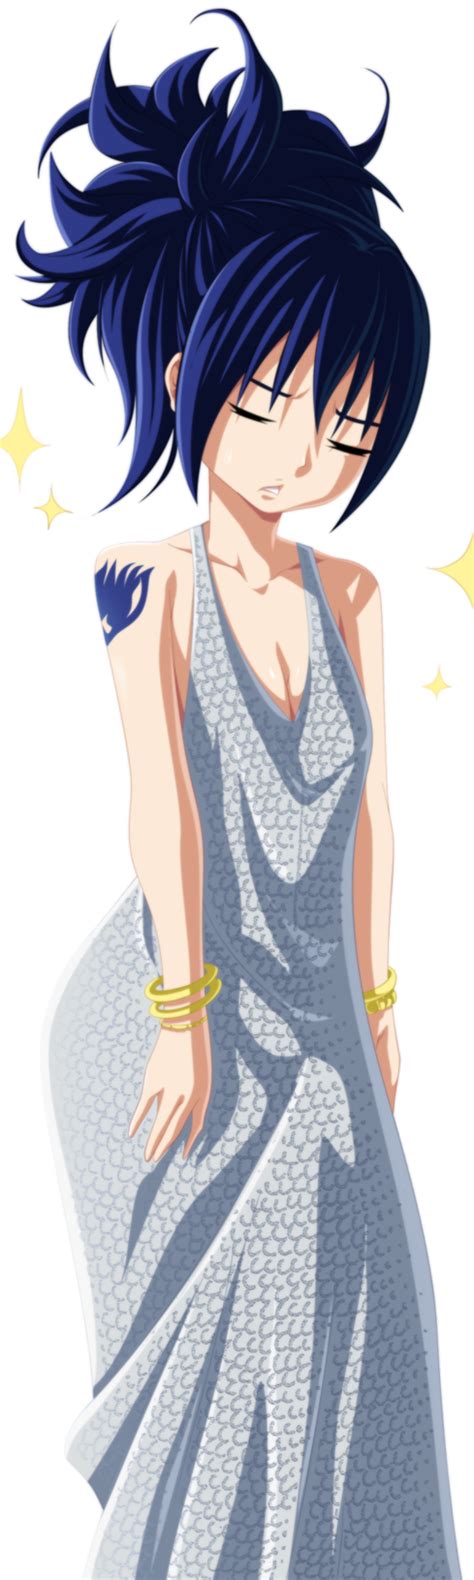 Wendy Marvell Fairy Tail Highres Tagme Blue Hair Dress Image View Gelbooru Free